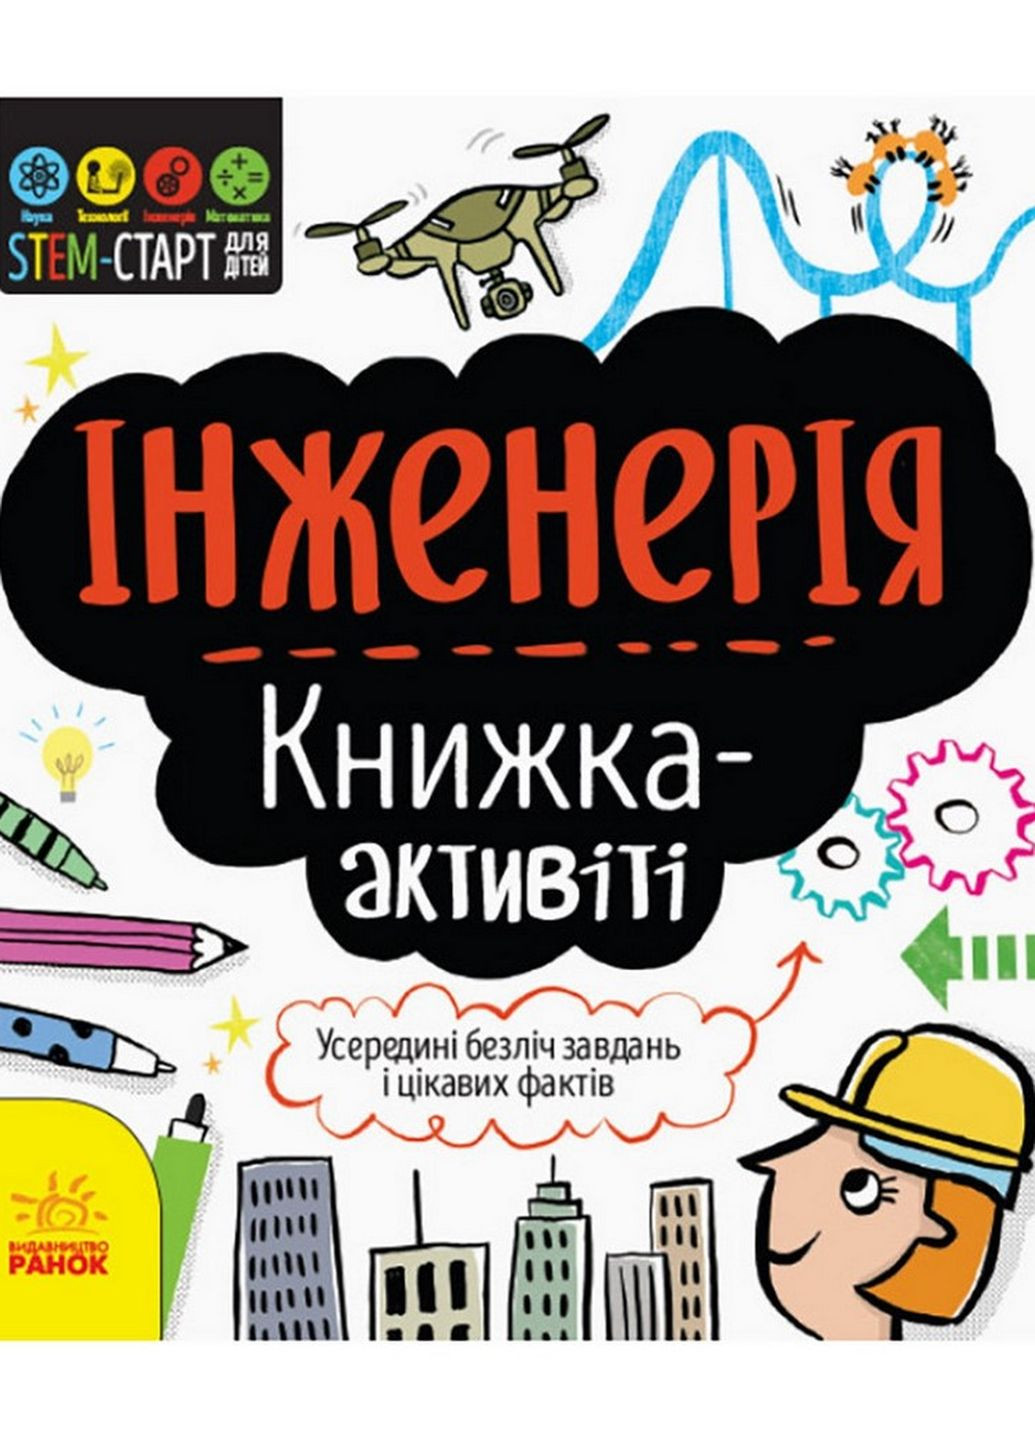 STEM-старт для детей "Инженерия: книга-активити" Ранок 1234003 на украинском языке Ranok Creative (276776519)